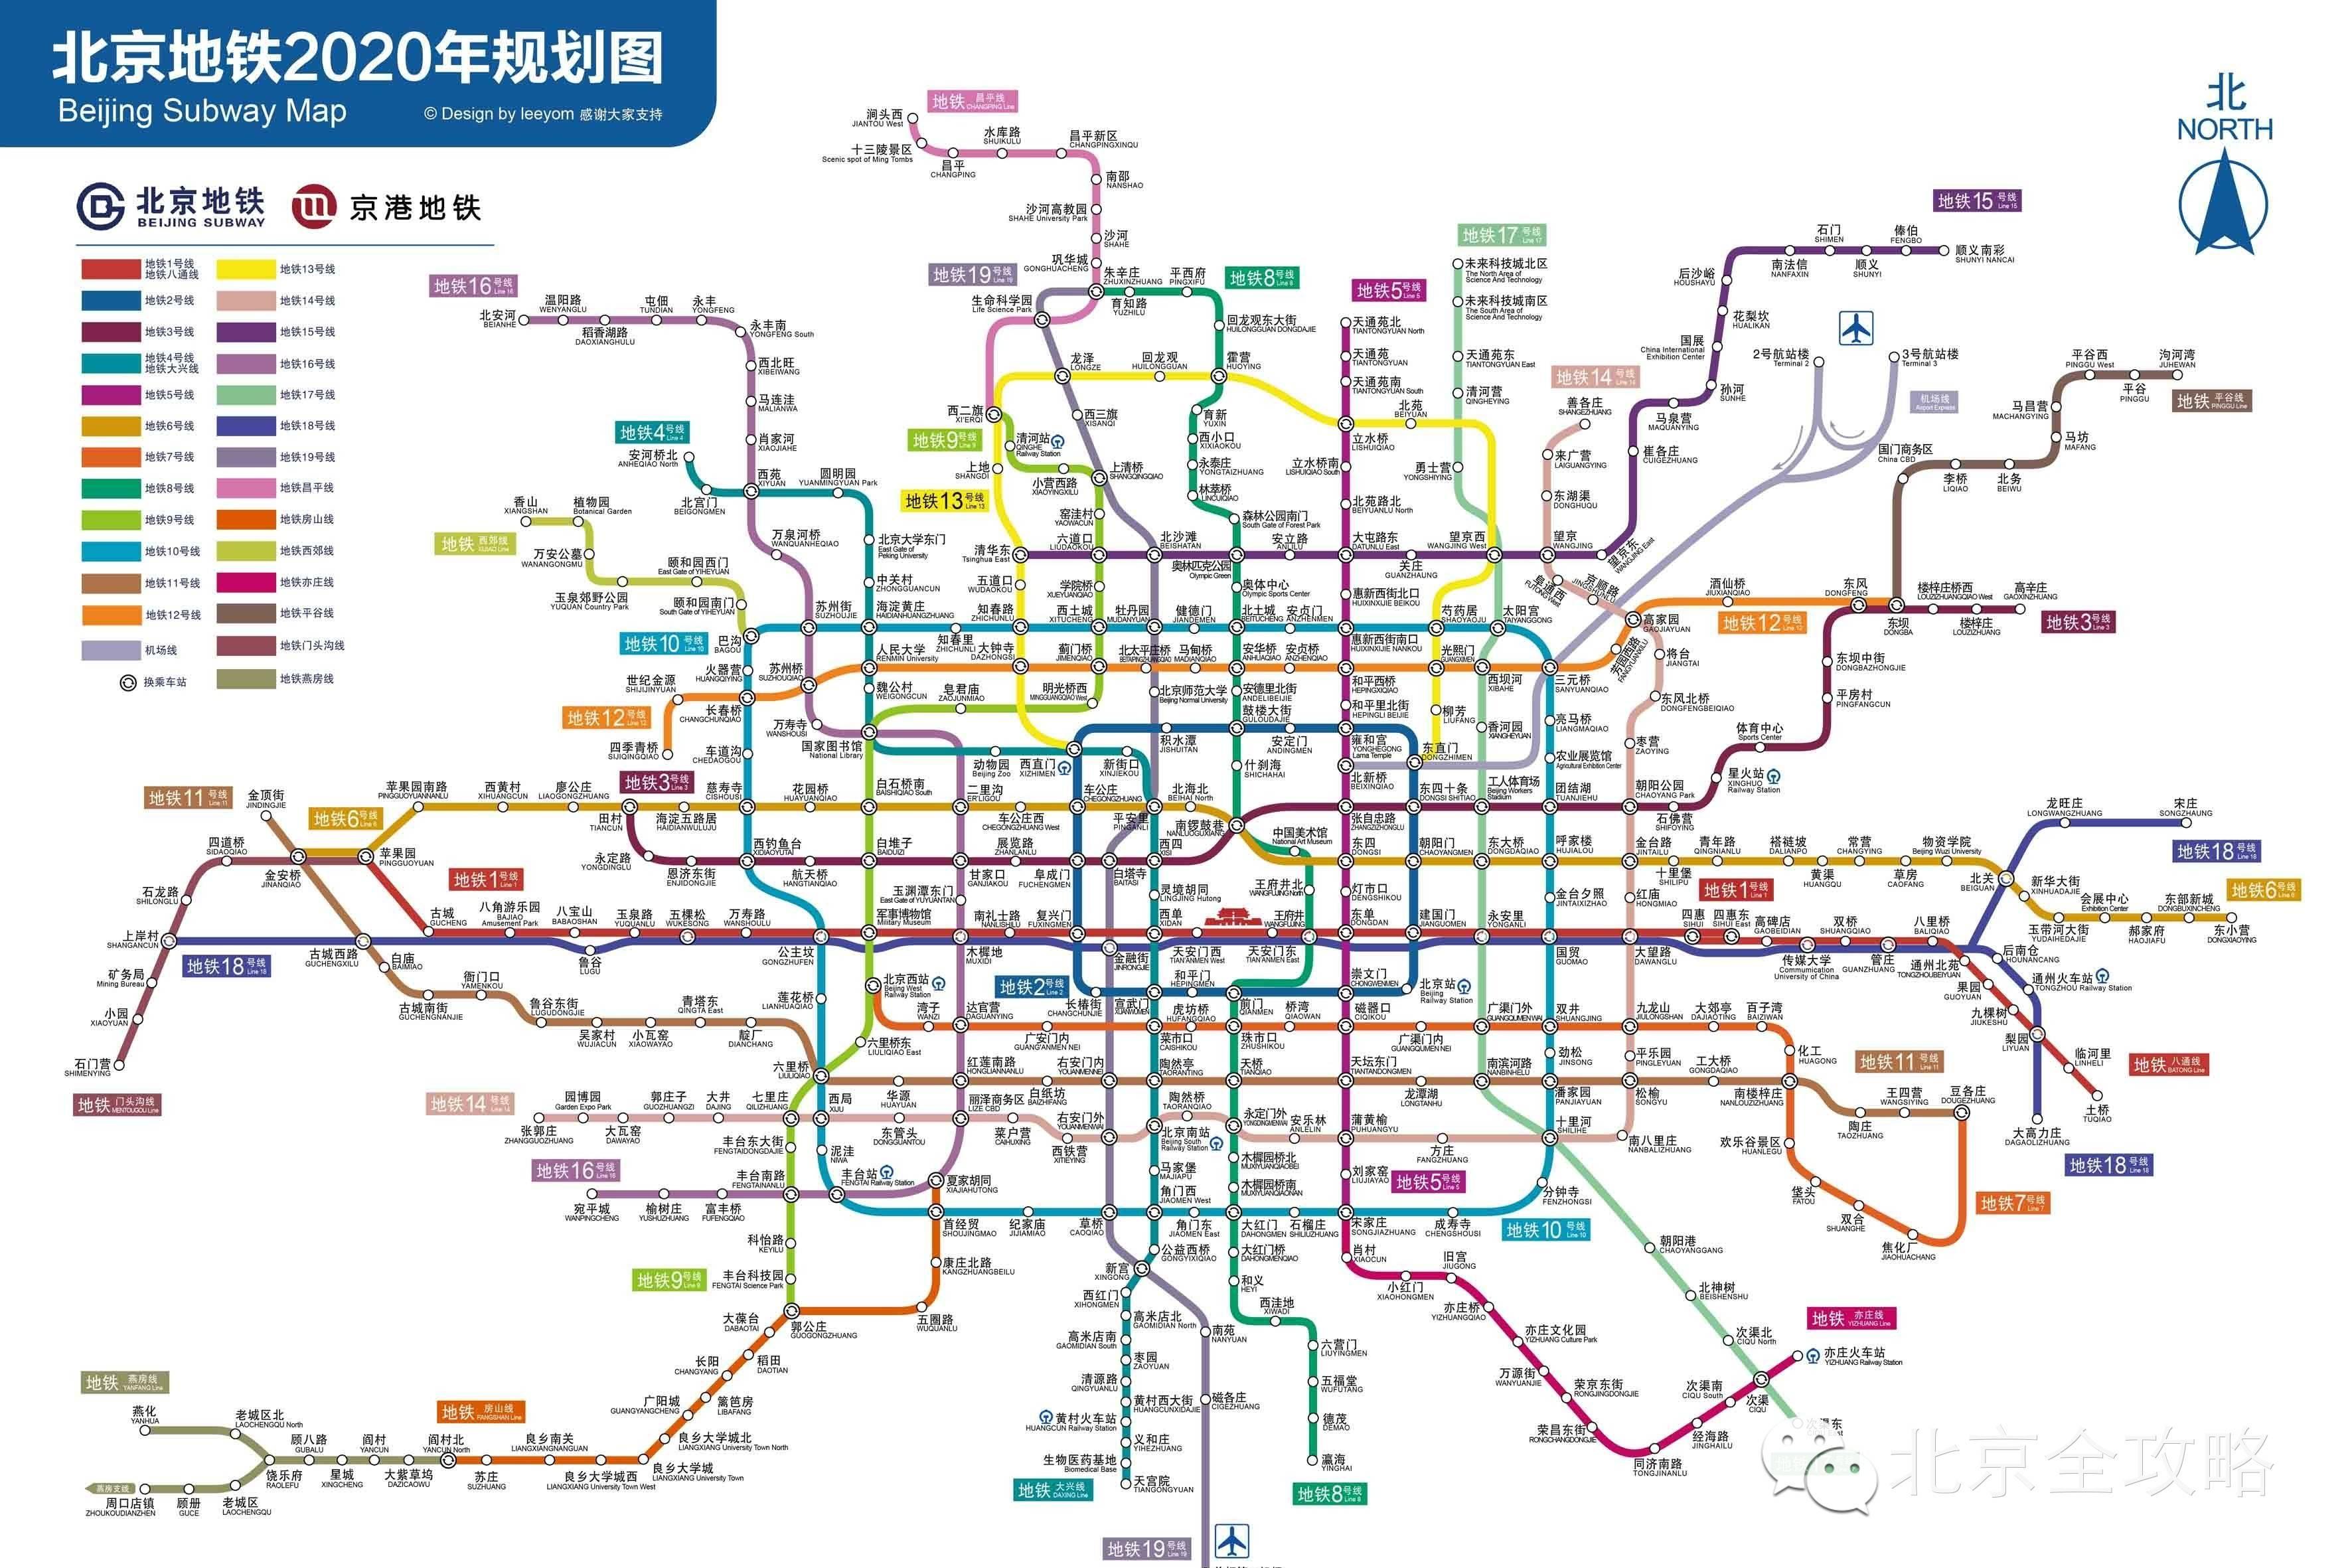 北京地铁3号线一期工程西起东四十条站(含起点至东四十条站区间)